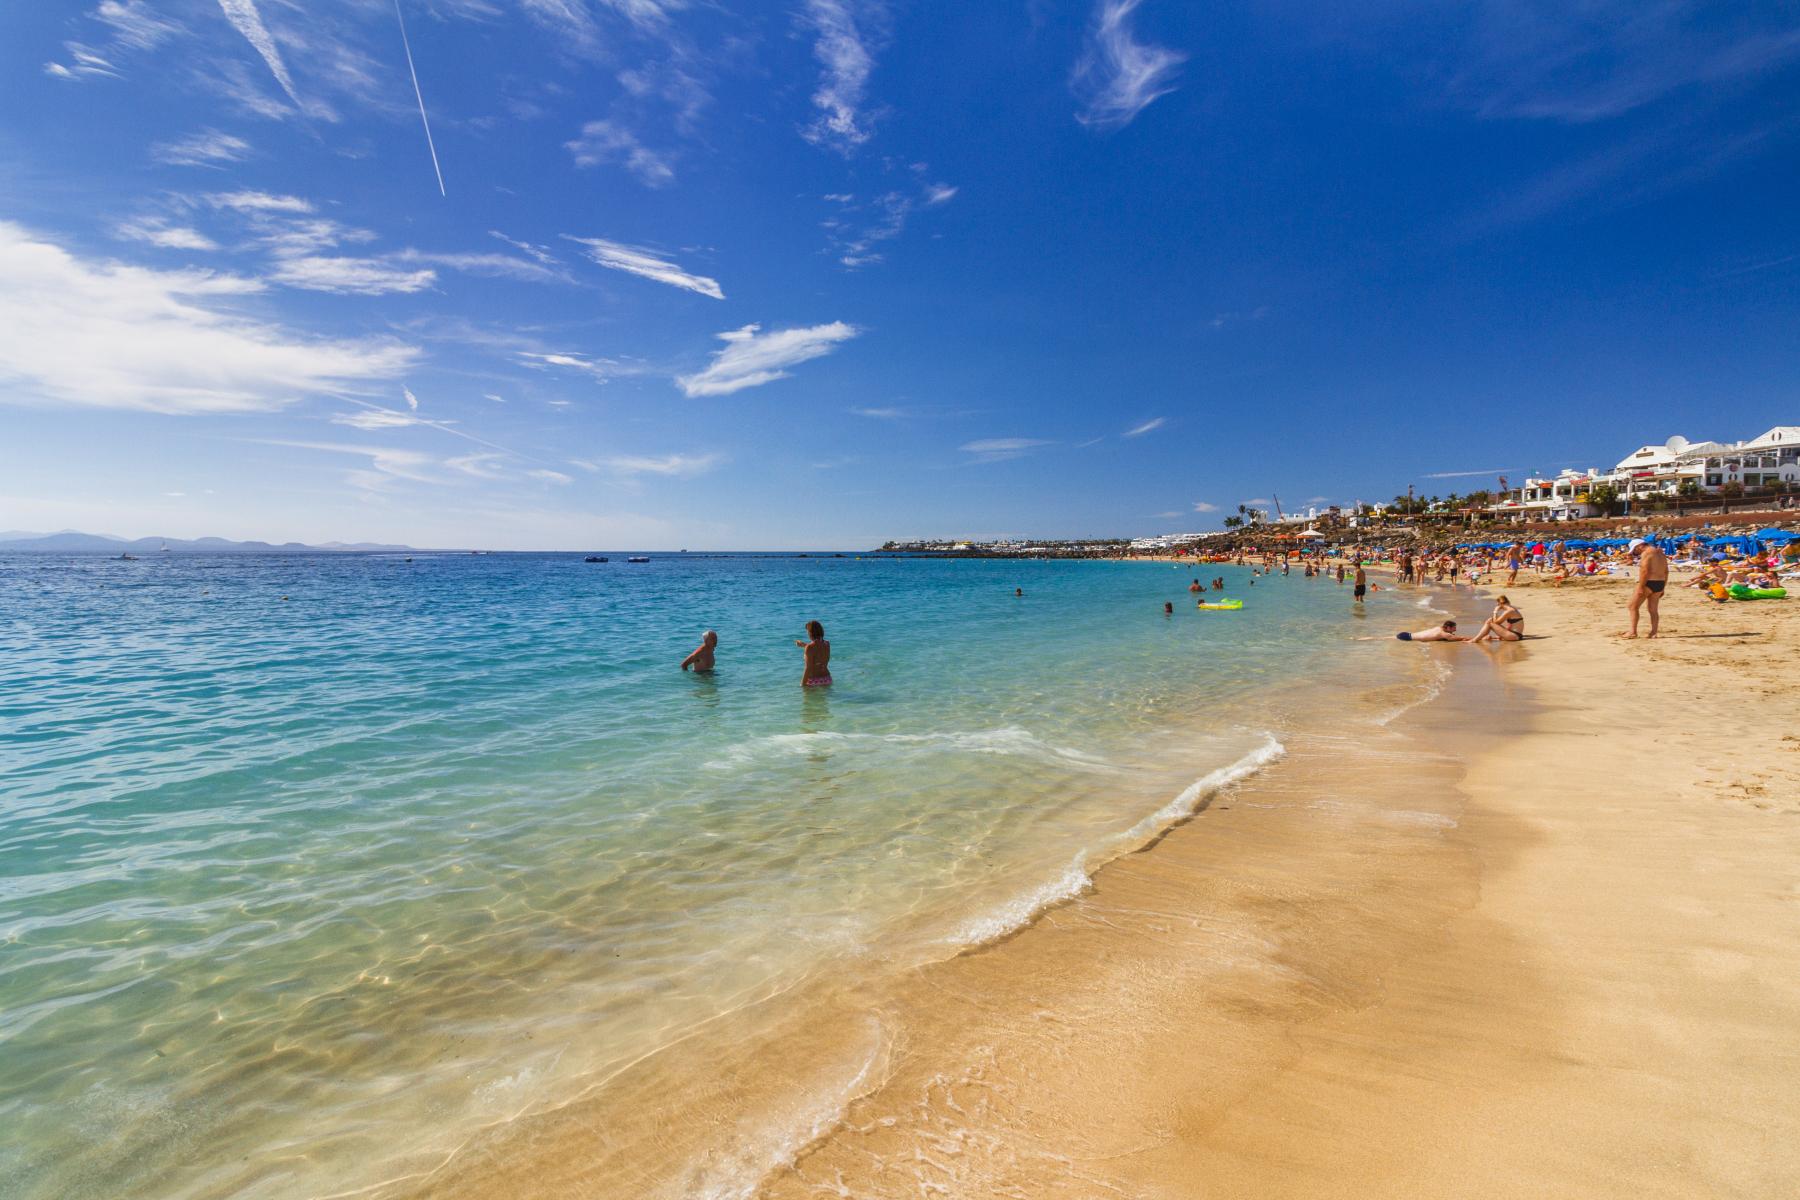 Erkunden Sie die wundervolle und unterhaltsame Playa Dorada auf Lanzarote